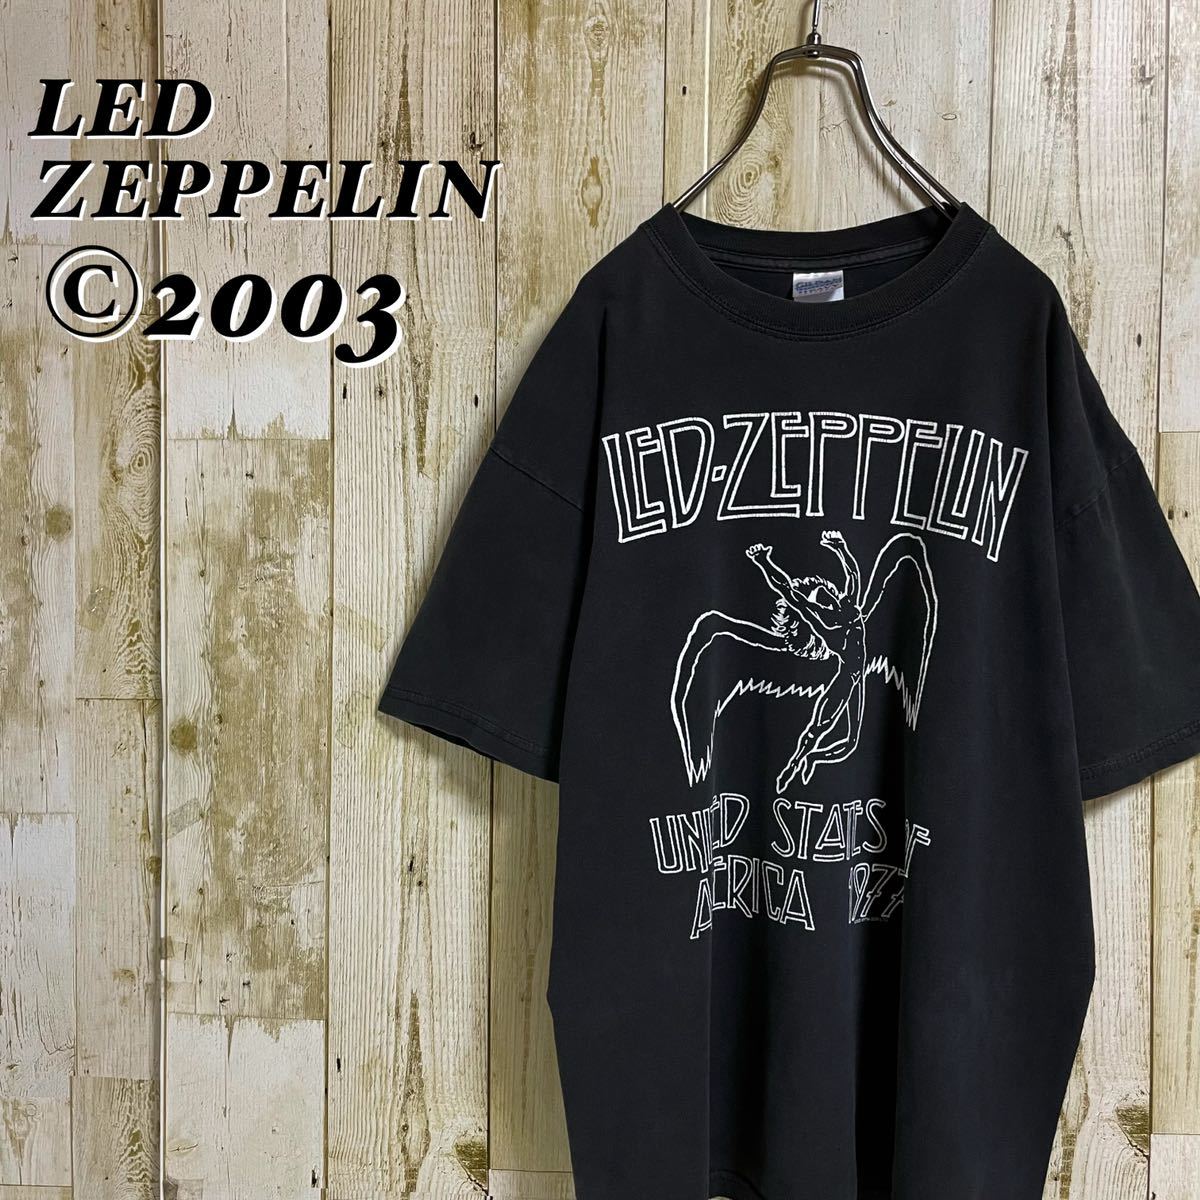 ギルダン レッド・ツェッペリン ビッグプリント コピーライト 2003年 正規品 ベビーウエイト バンドTシャツ バンT メタルTee L相当 古着